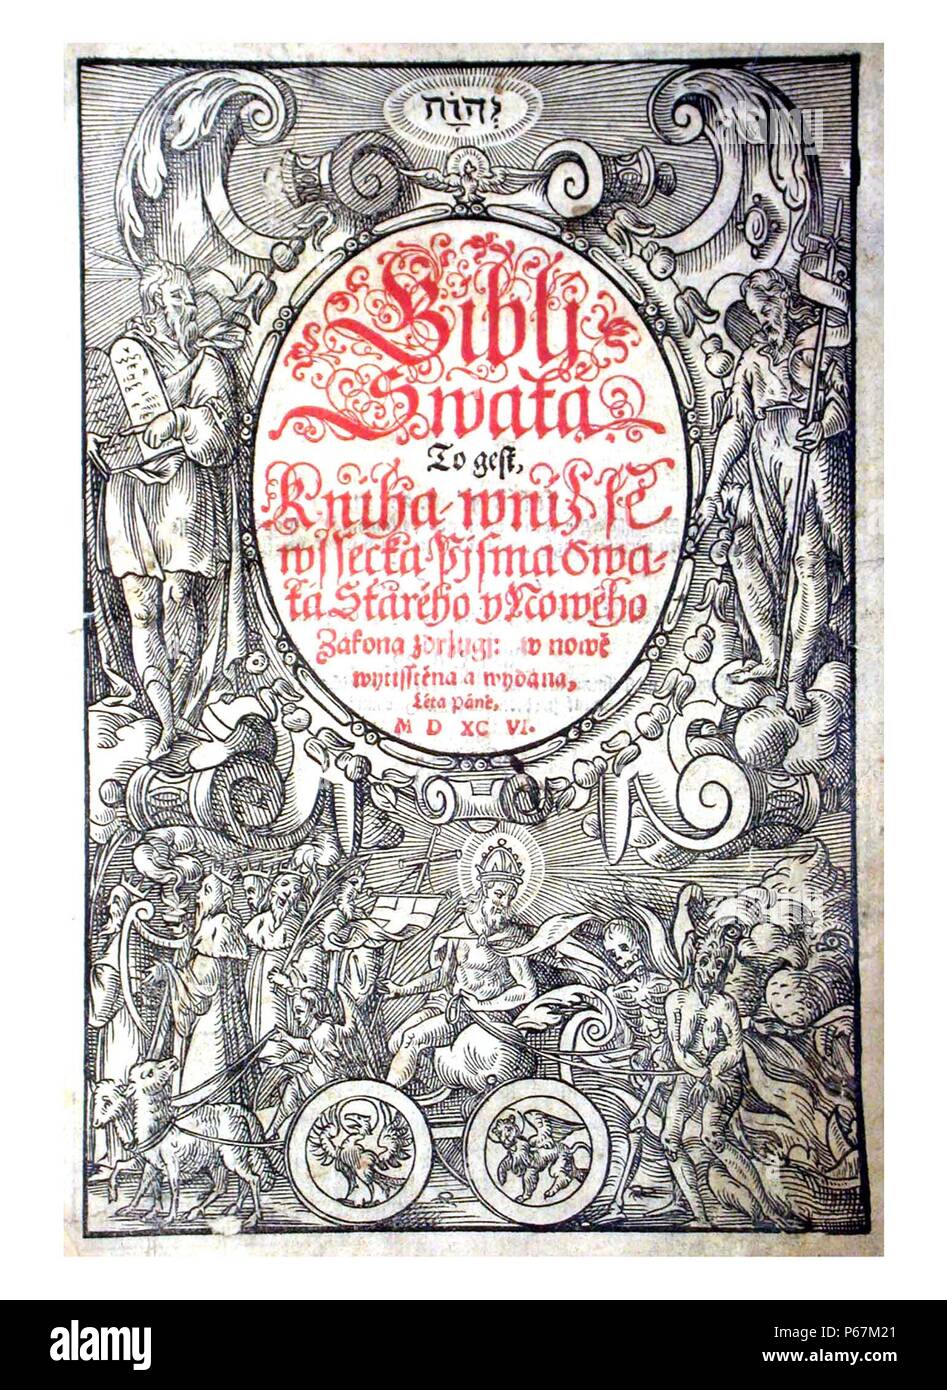 Portada de una bohemia Kralitz biblia, una edición de la Biblia de Kralice, publicado por la Unitas Fratrum protestante. Fecha 1596 Foto de stock